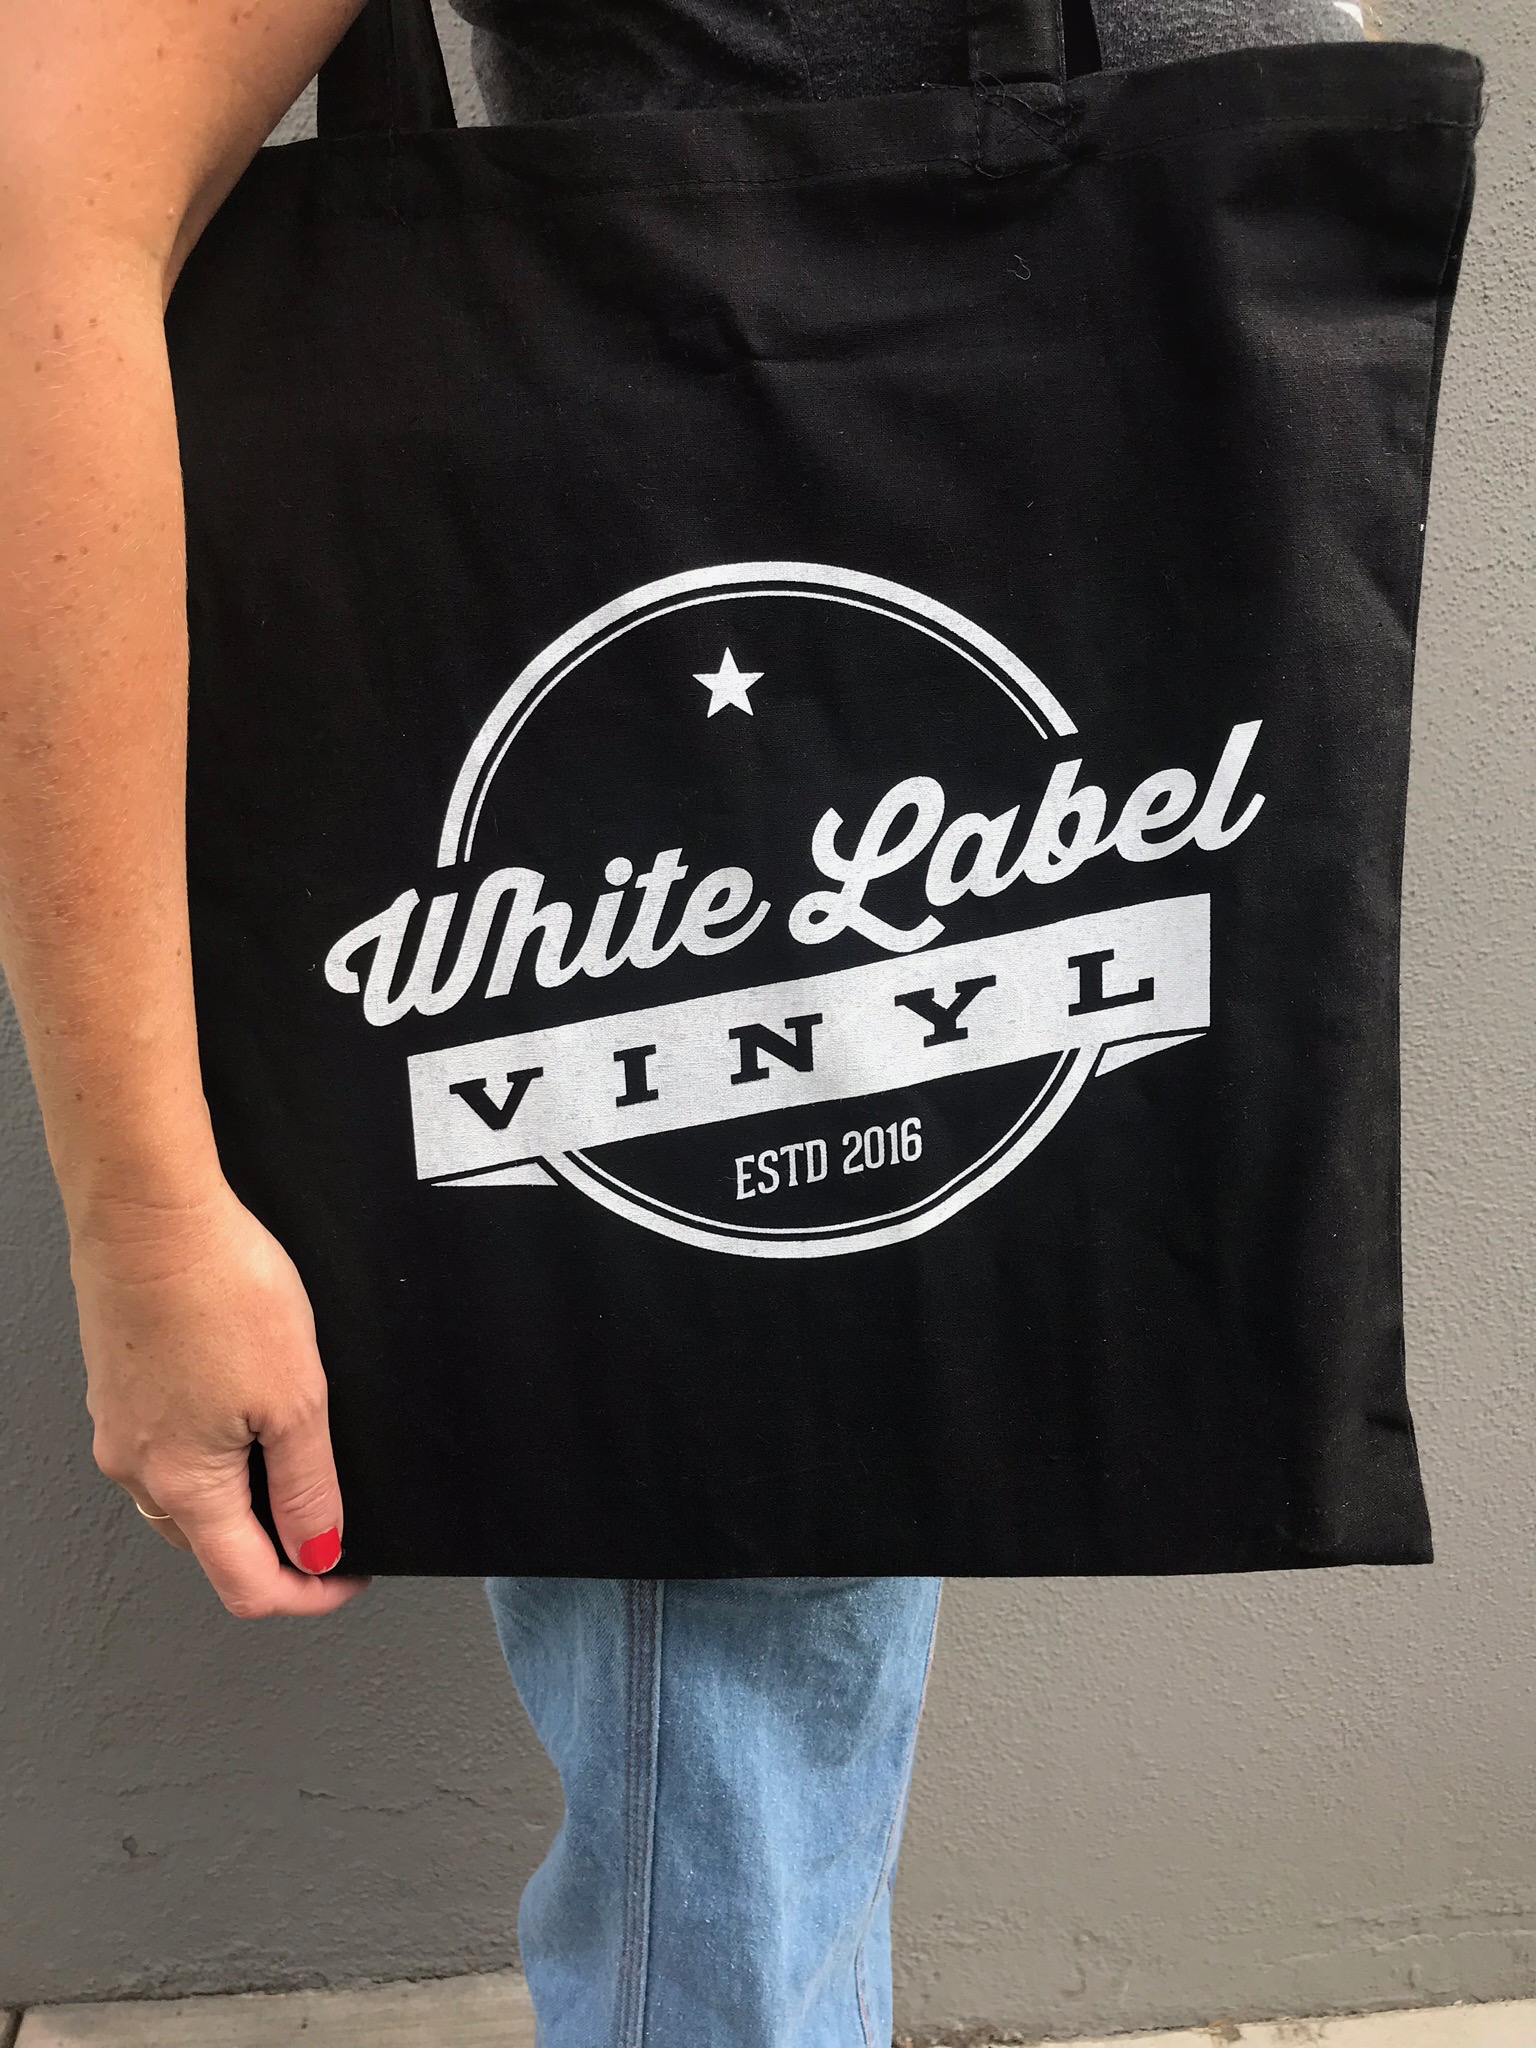 Records are a Sound Purchase - Record Tote Bag (Black) — White